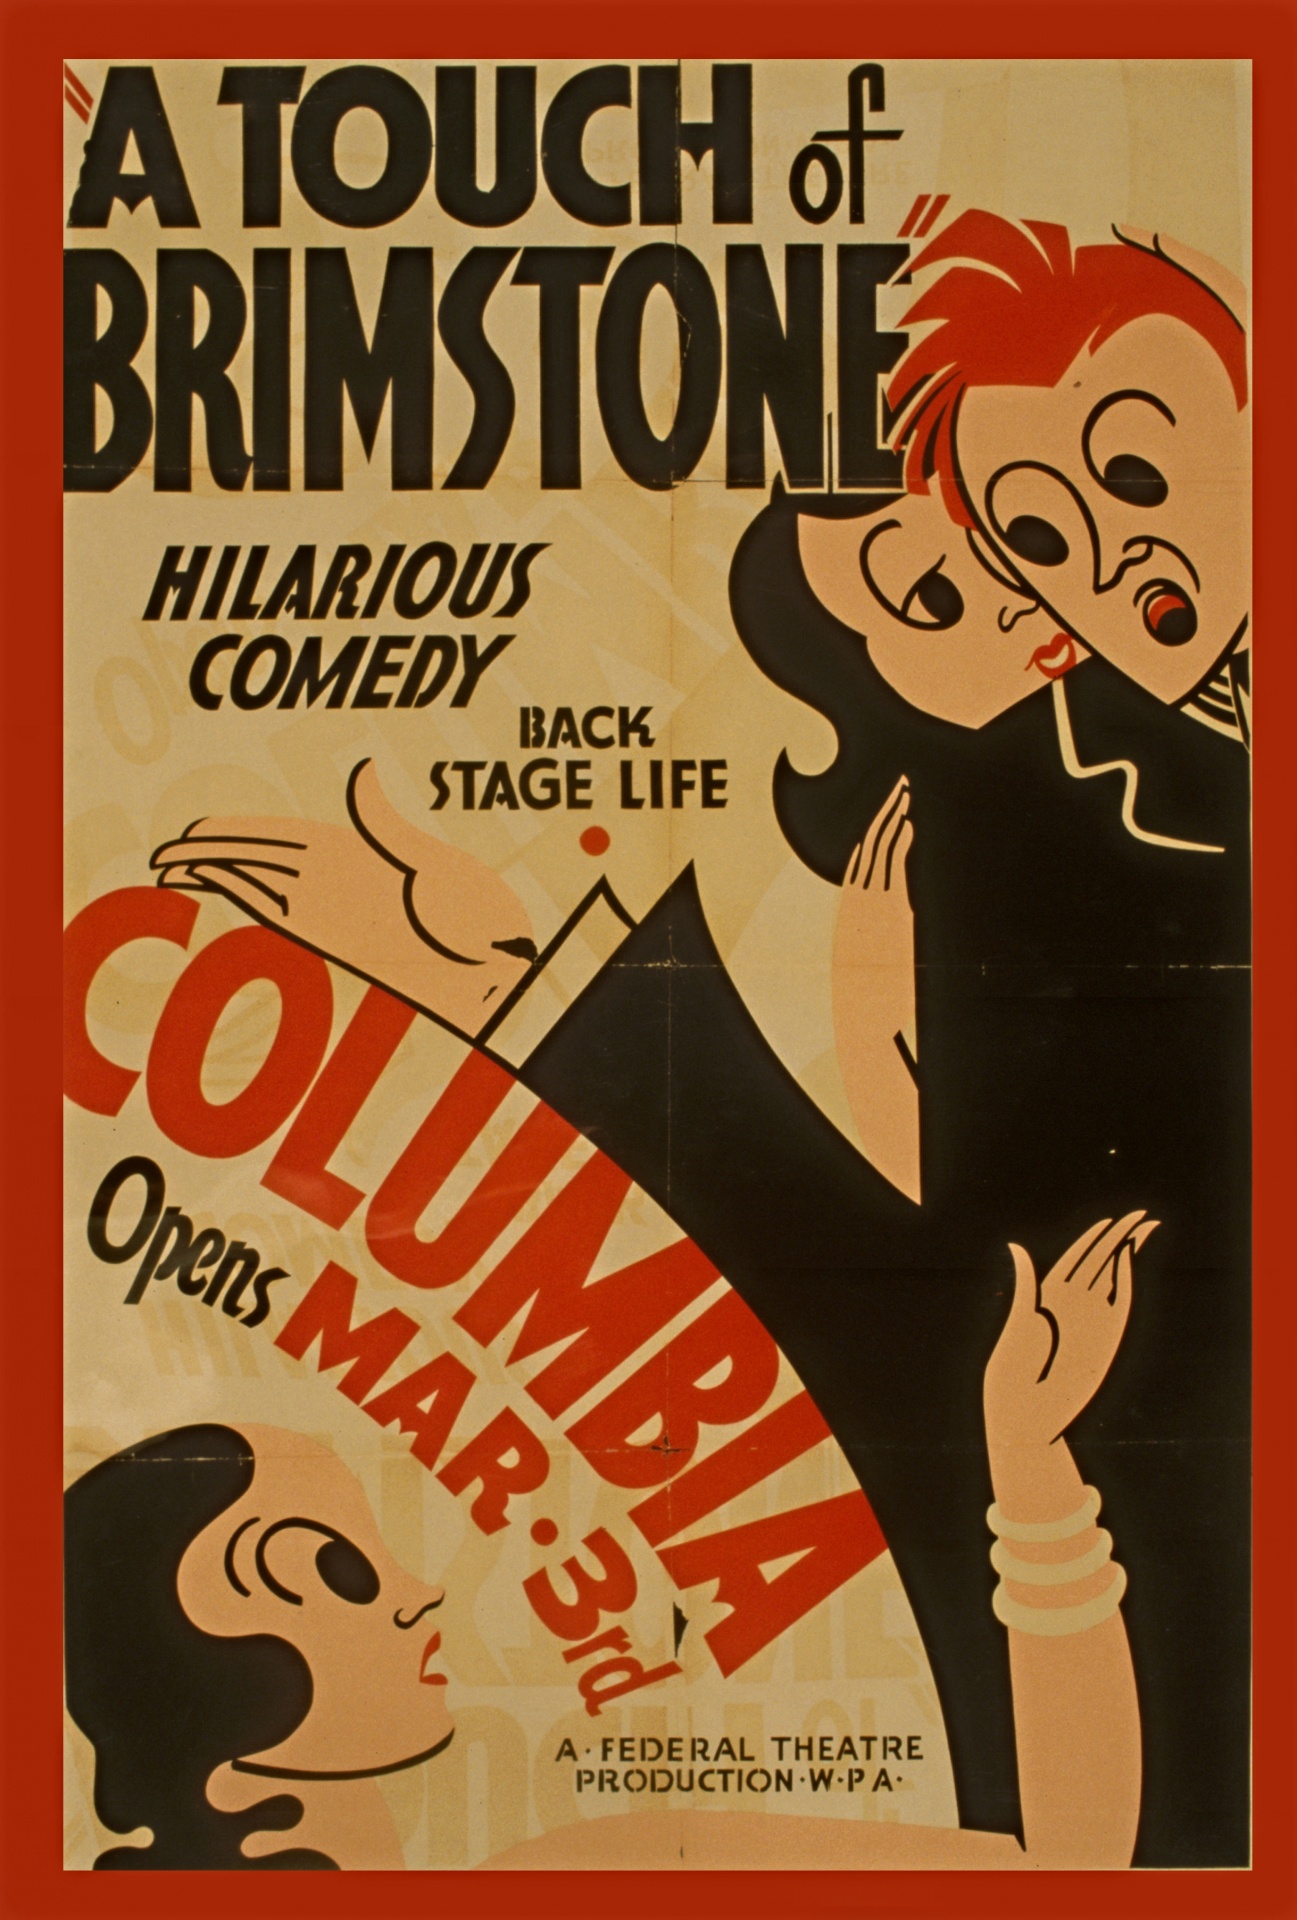 Brimstone Vintage Comedy Poster